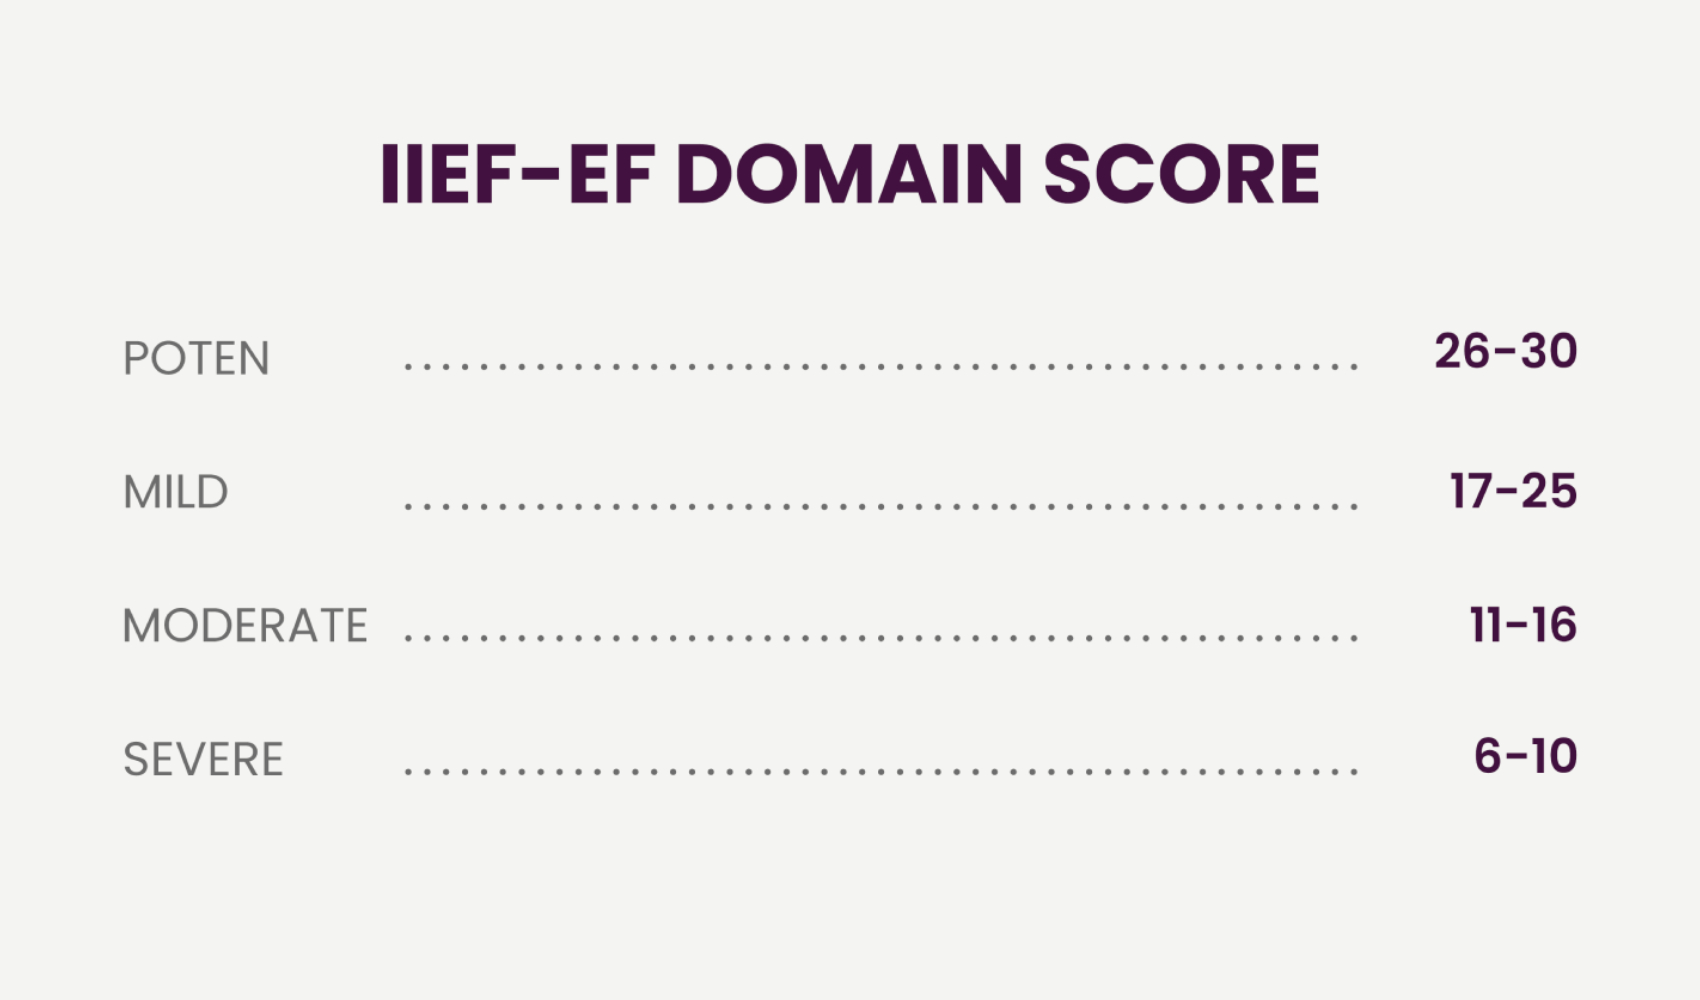 IIEF-EF DOMIN SCORE